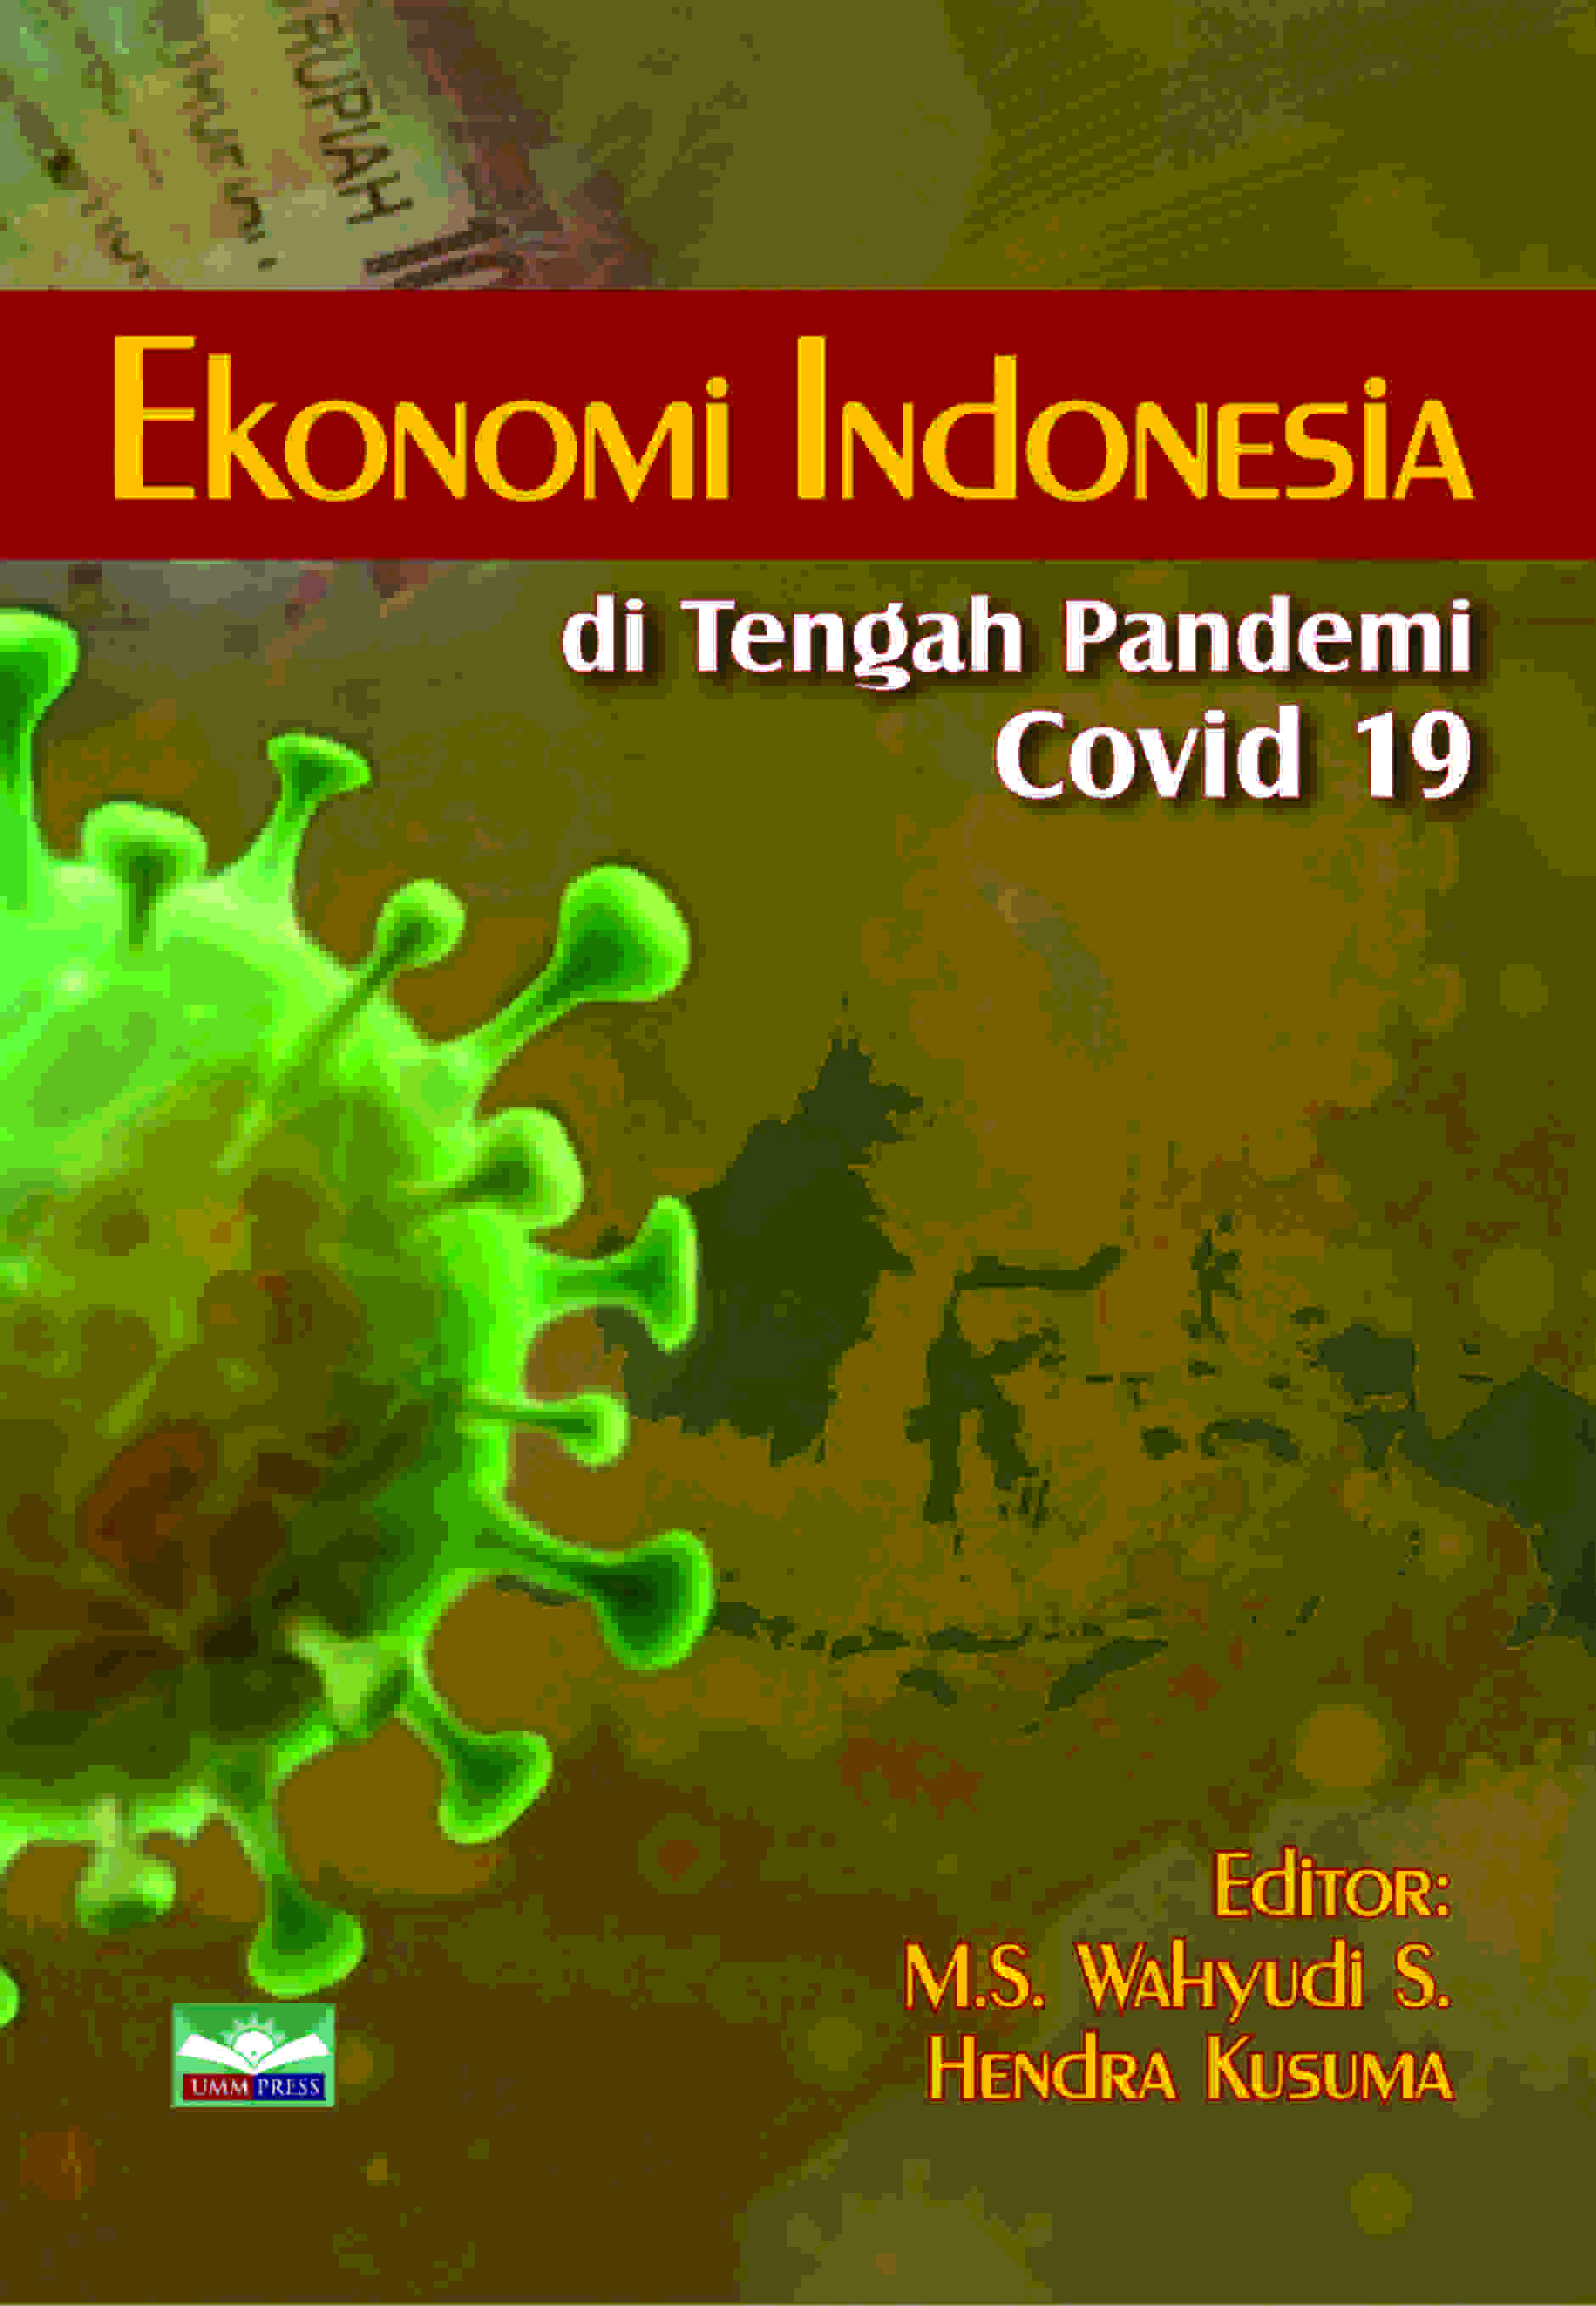 EKONOMI INDONESIA DITENGAH PANDEMI COVID-19